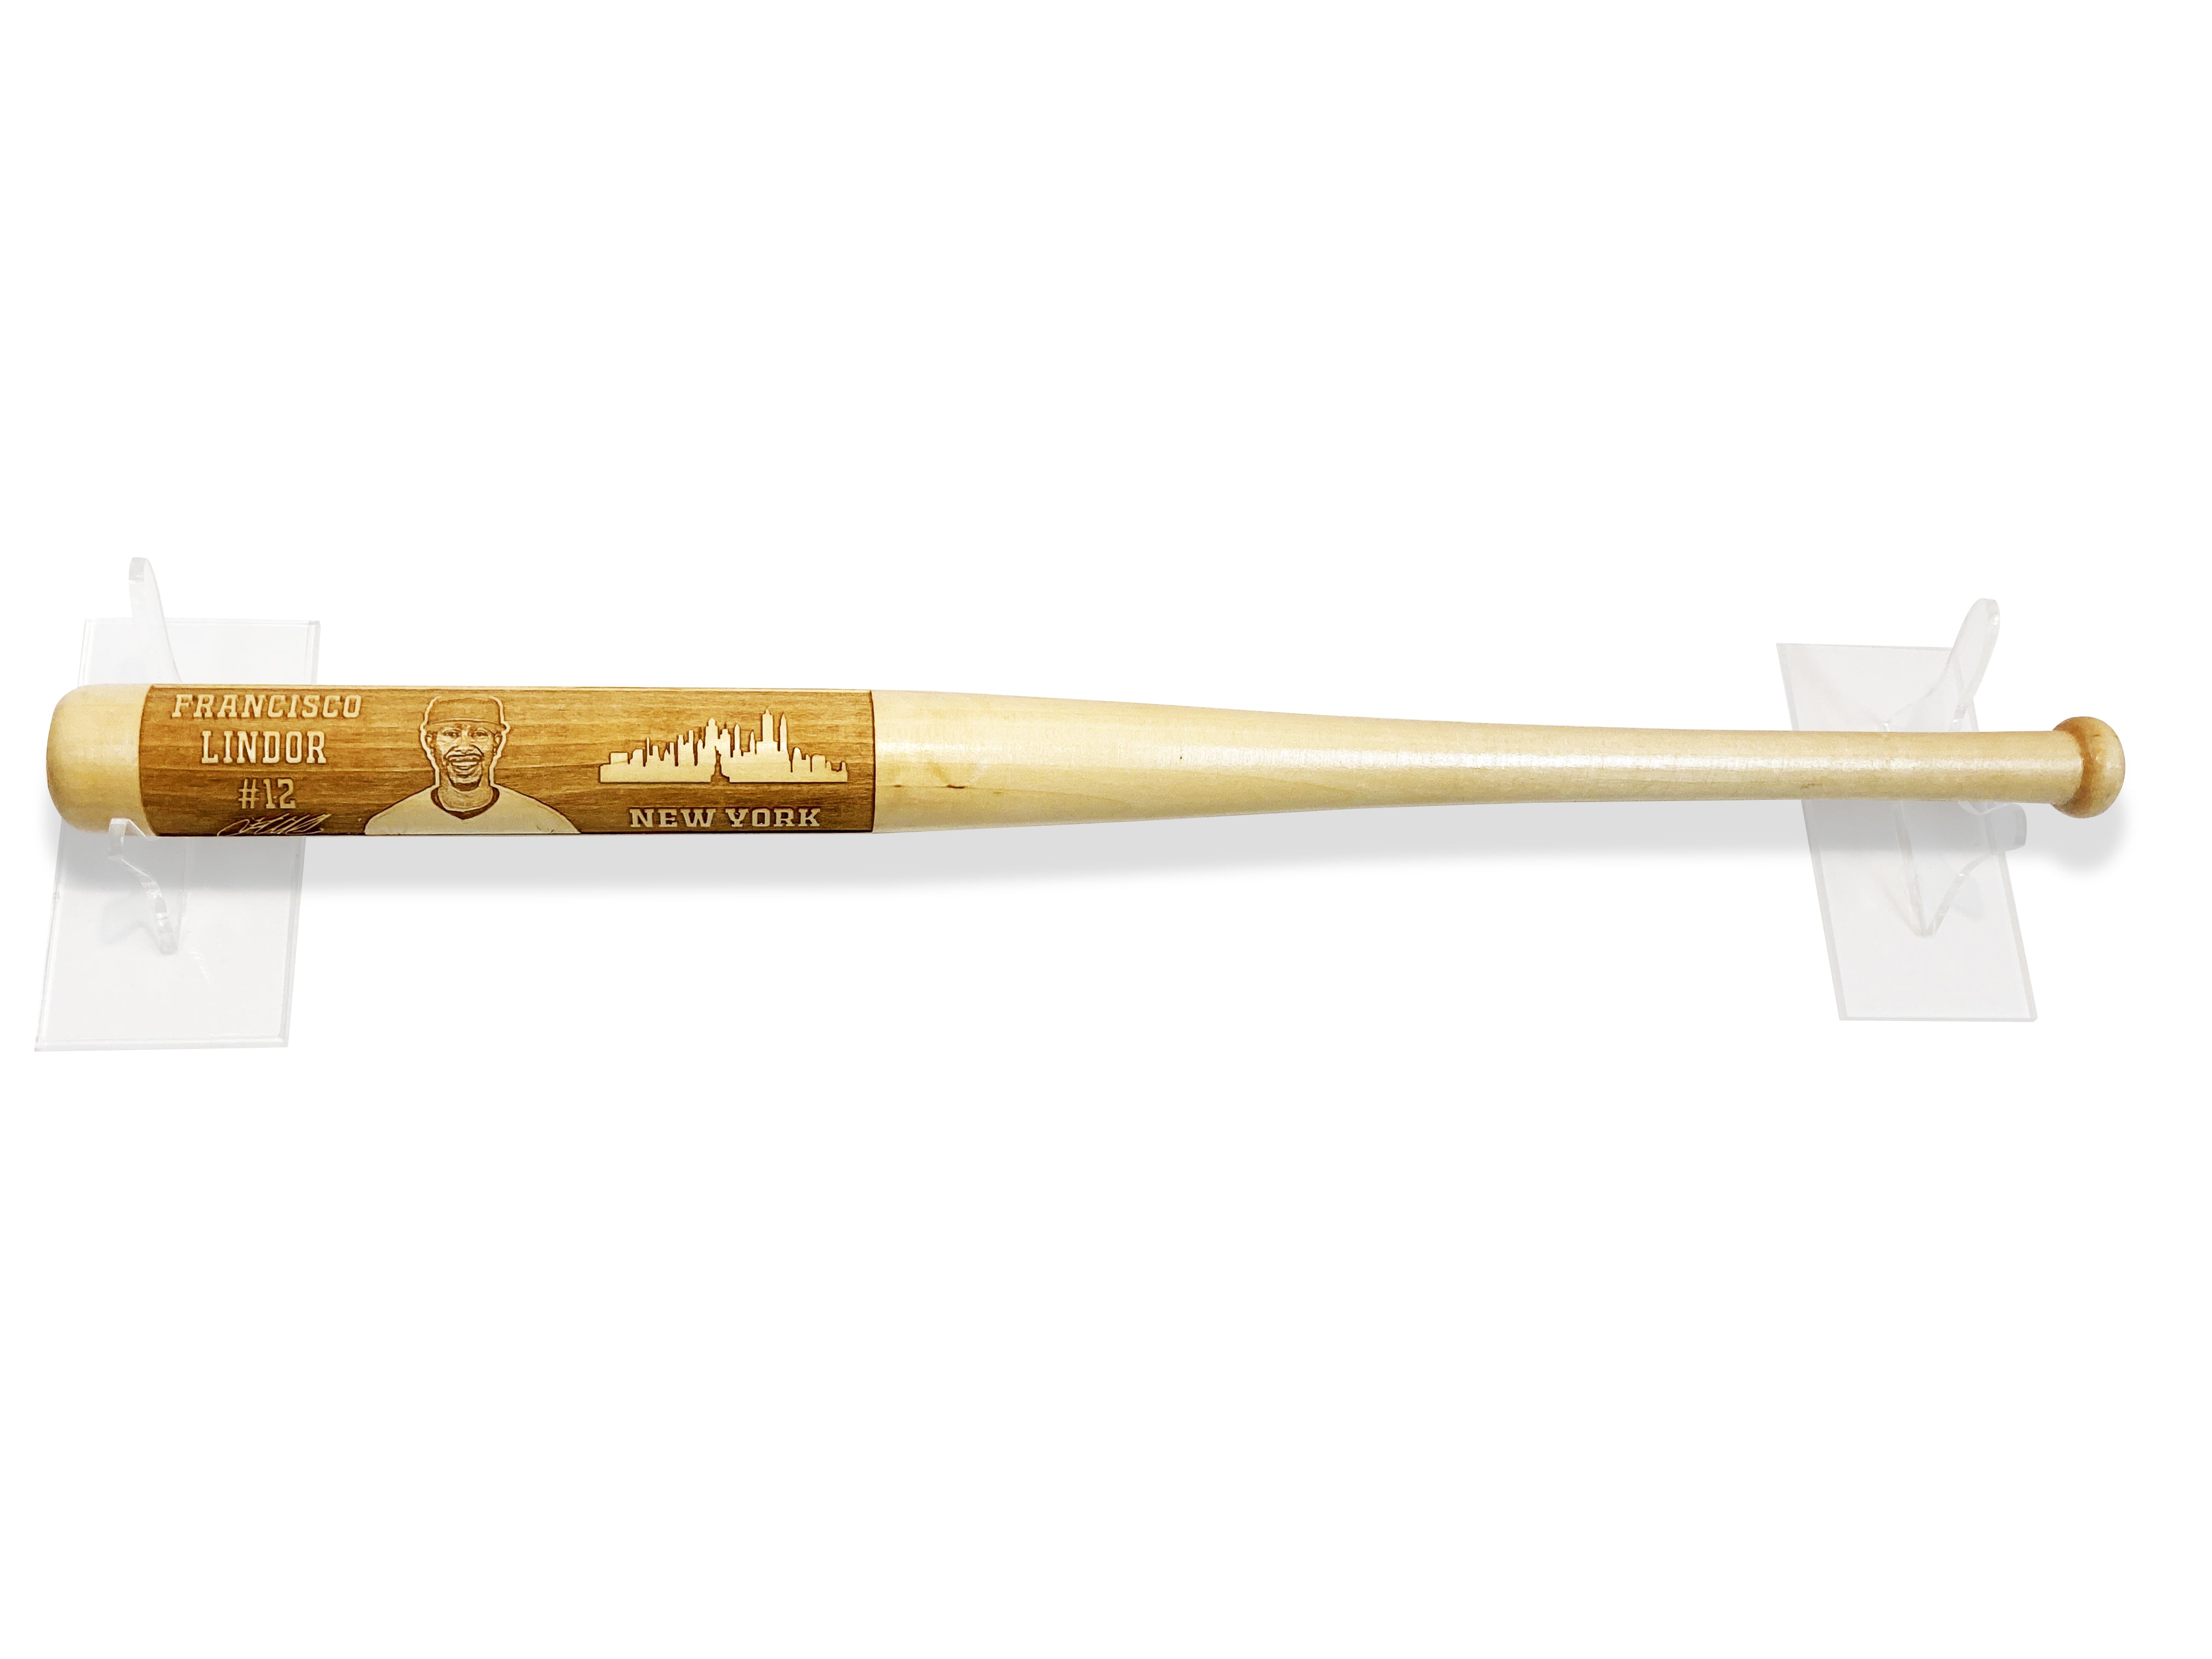 Francisco Lindor Laser-Engraved Wood Baseball Bat